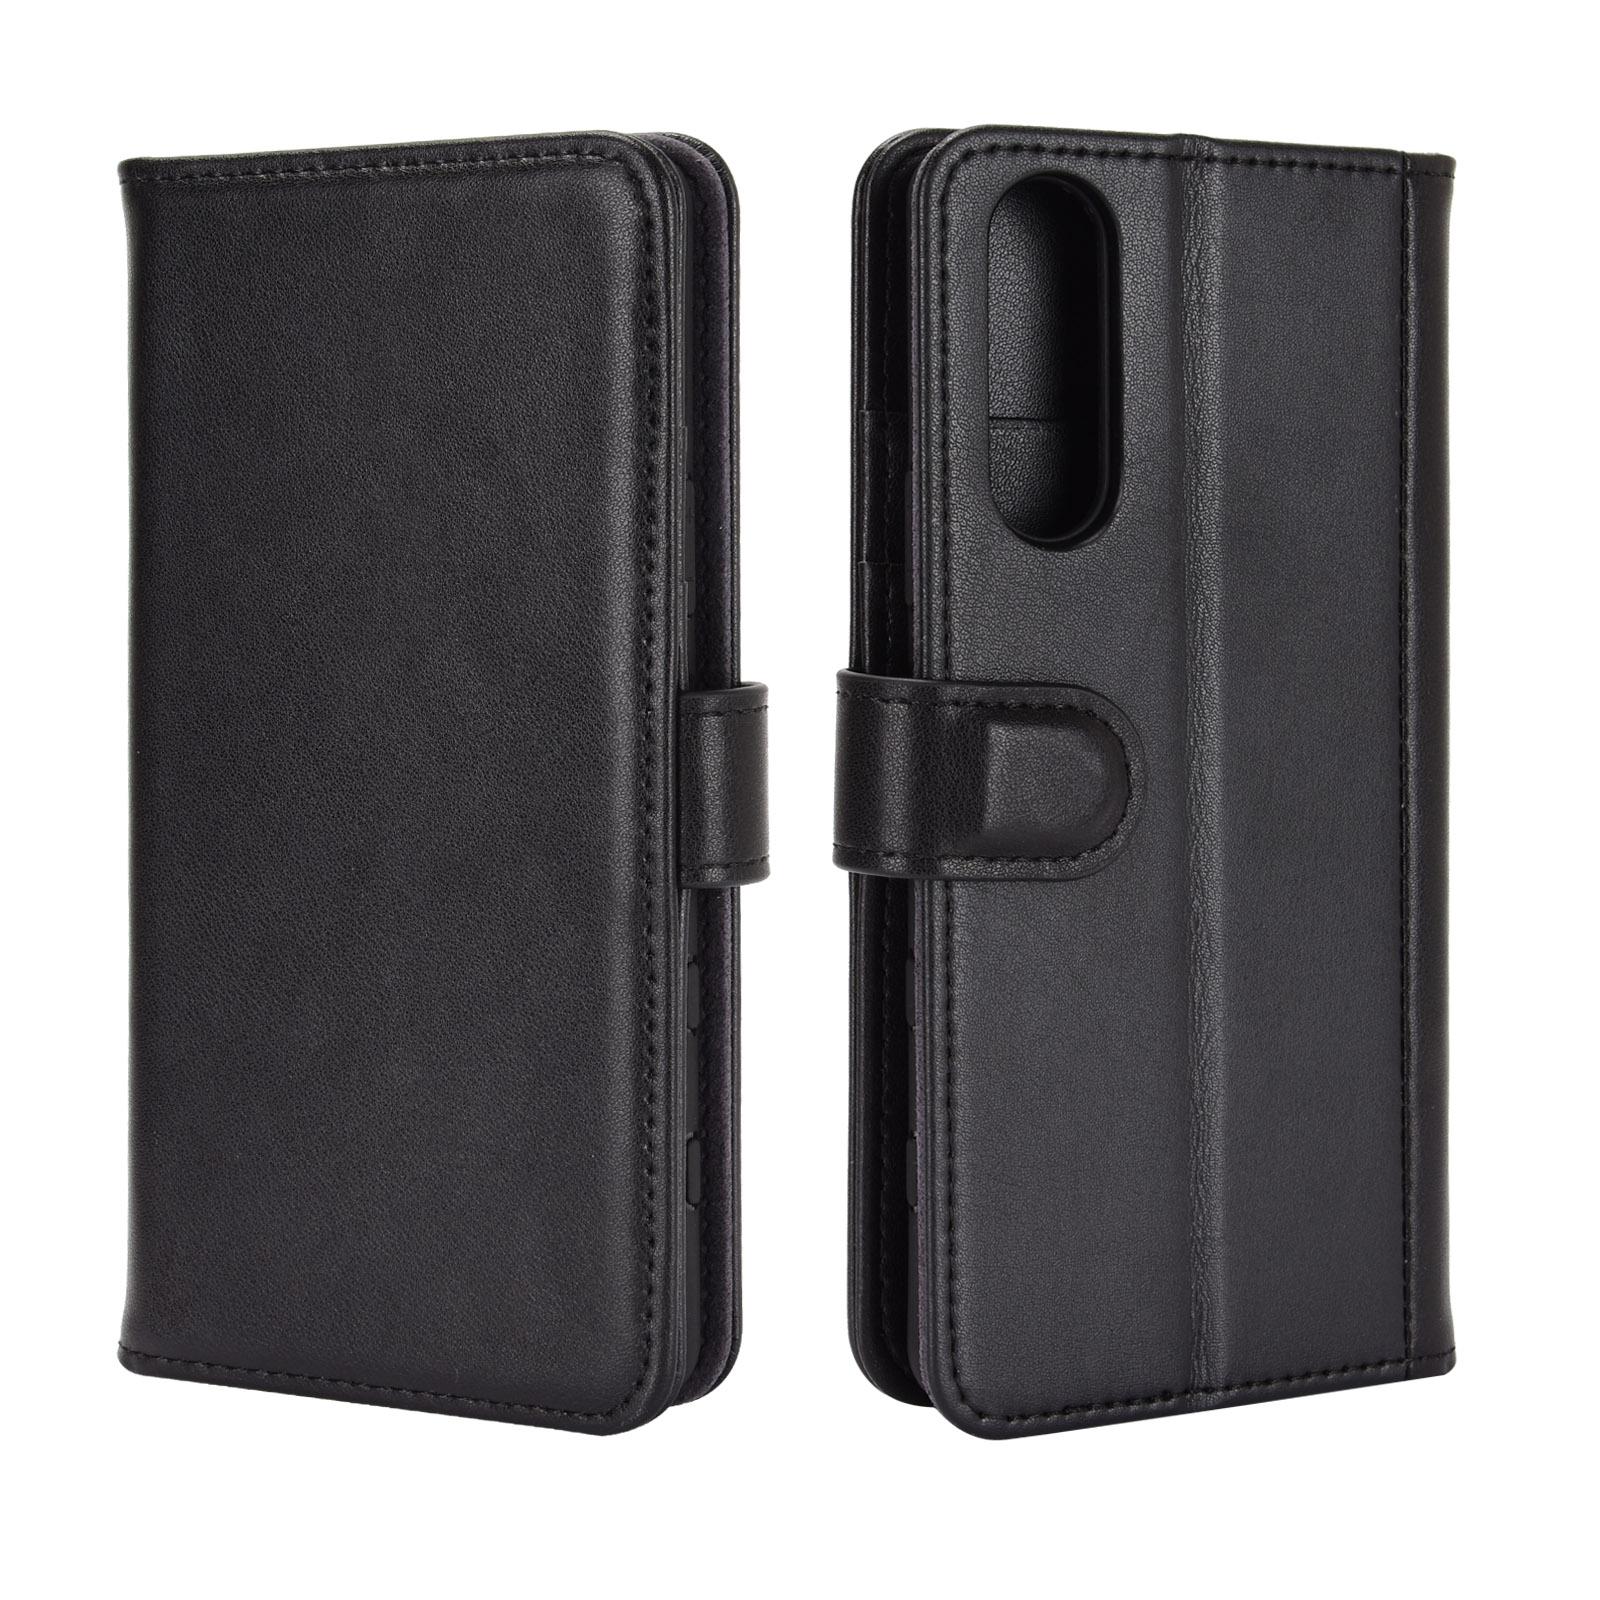 Sony Xperia 5 II Plånboksfodral i Äkta Läder, svart